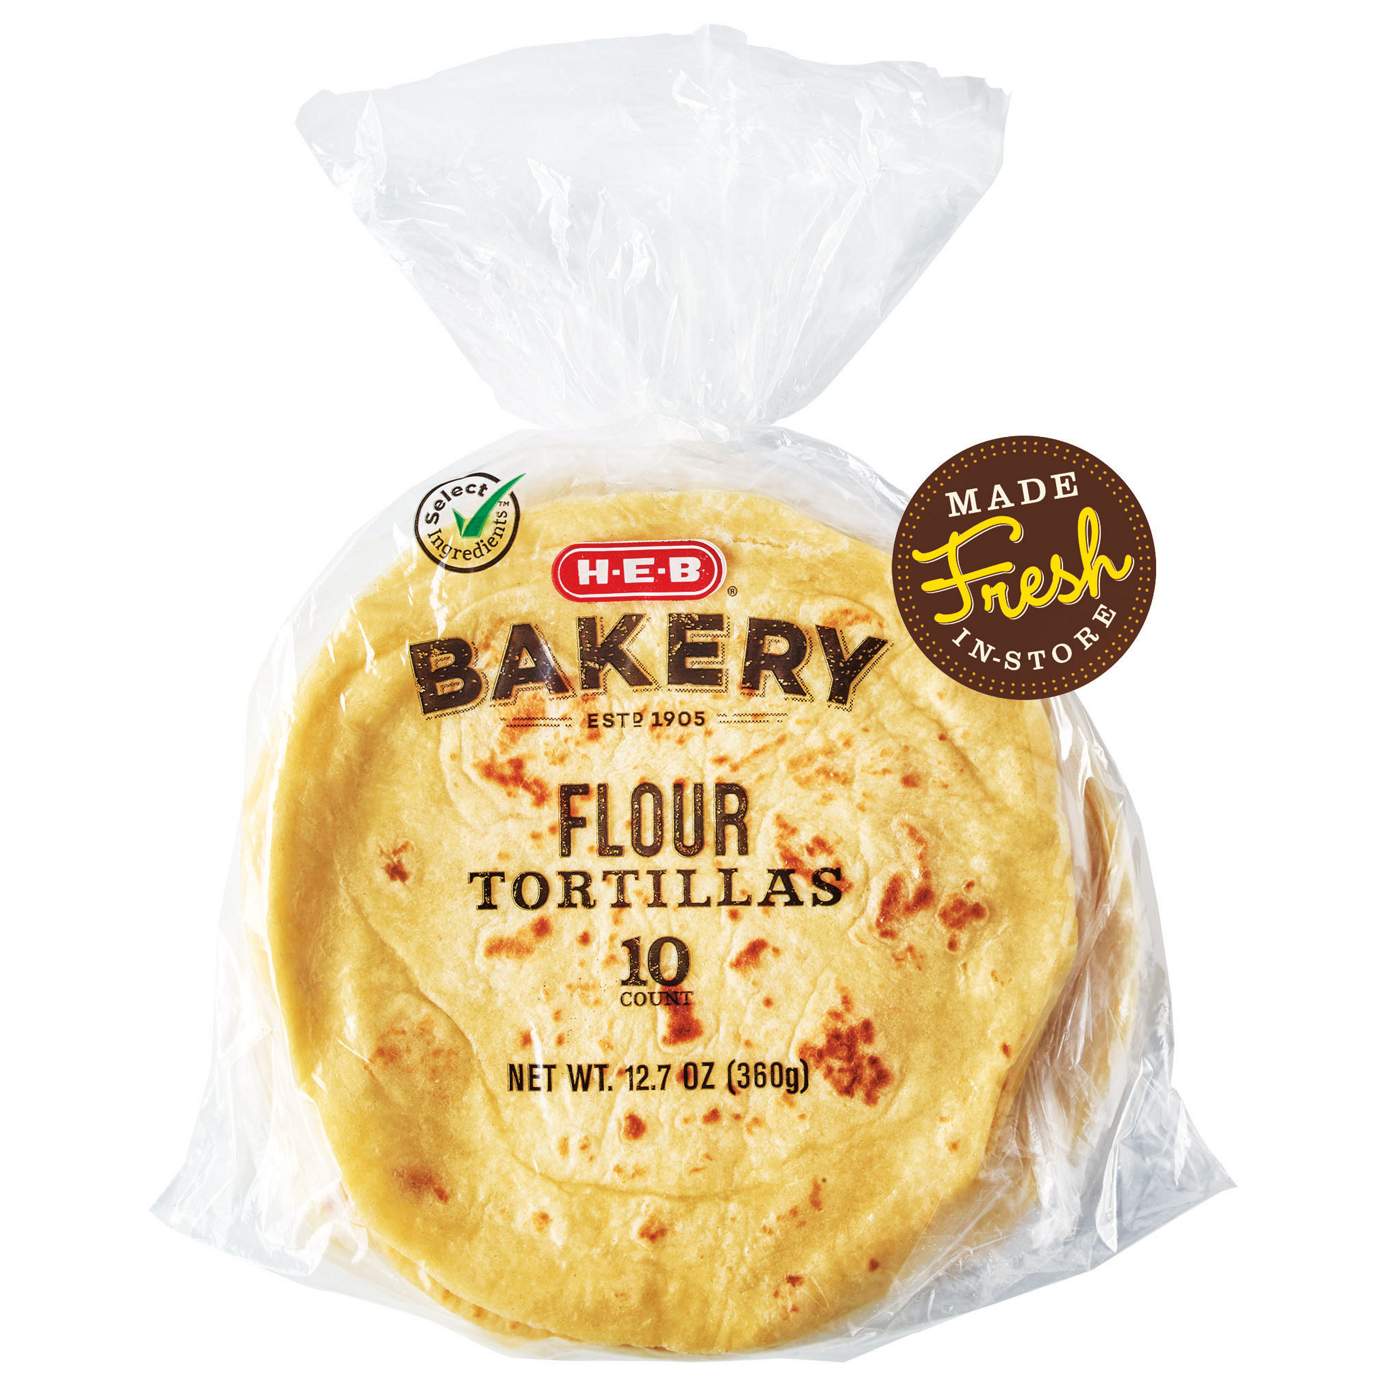 H-E-B Bakery Flour Tortillas; image 1 of 2